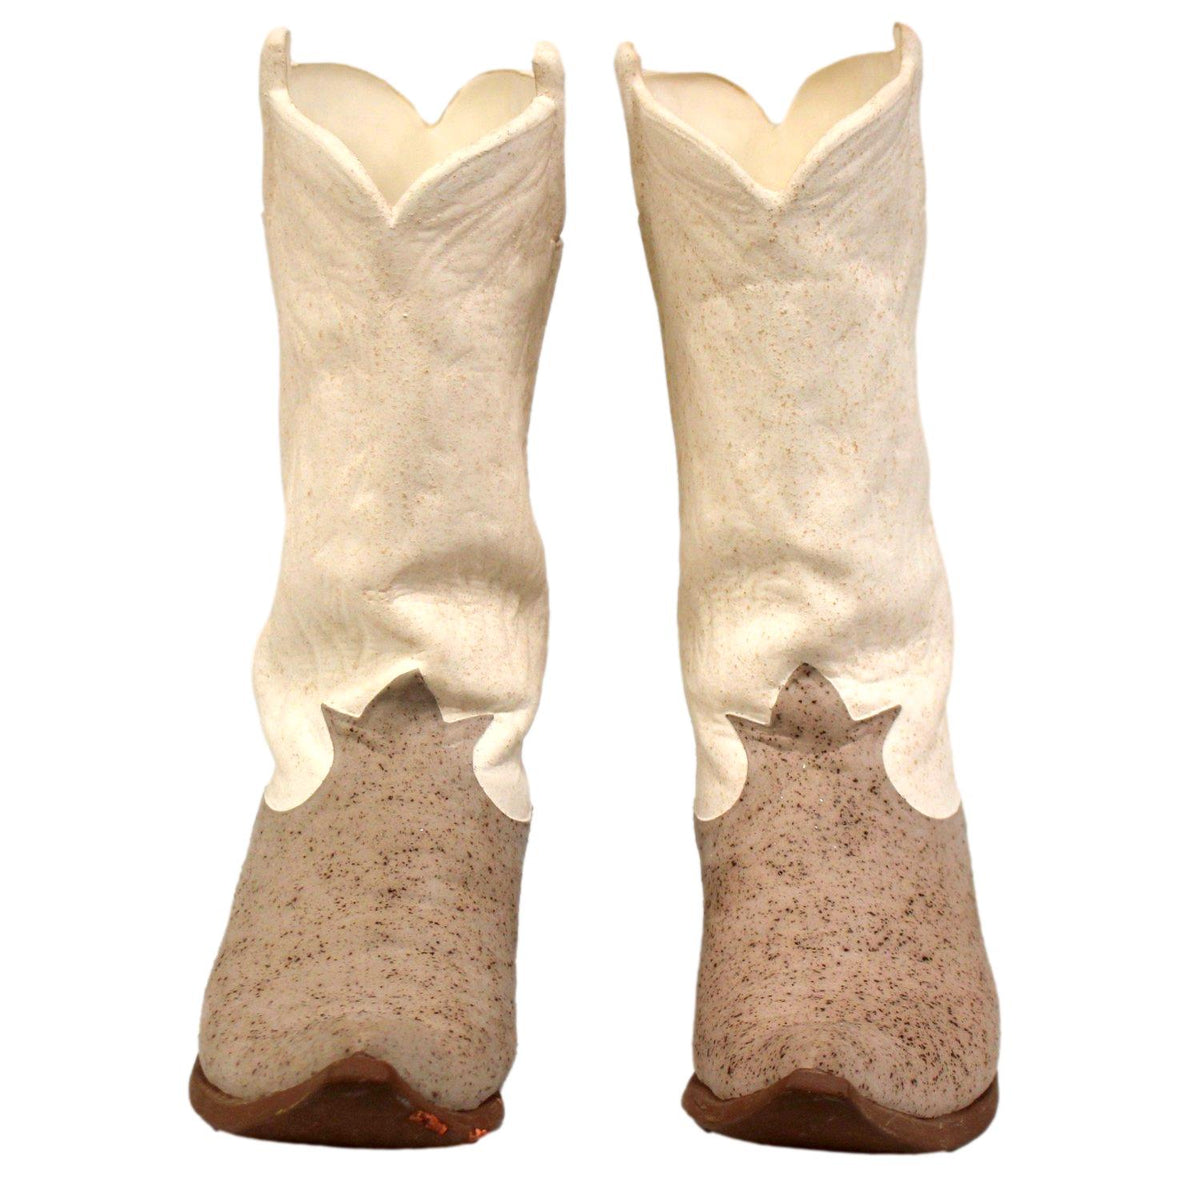 Decorative Ceramic Boots